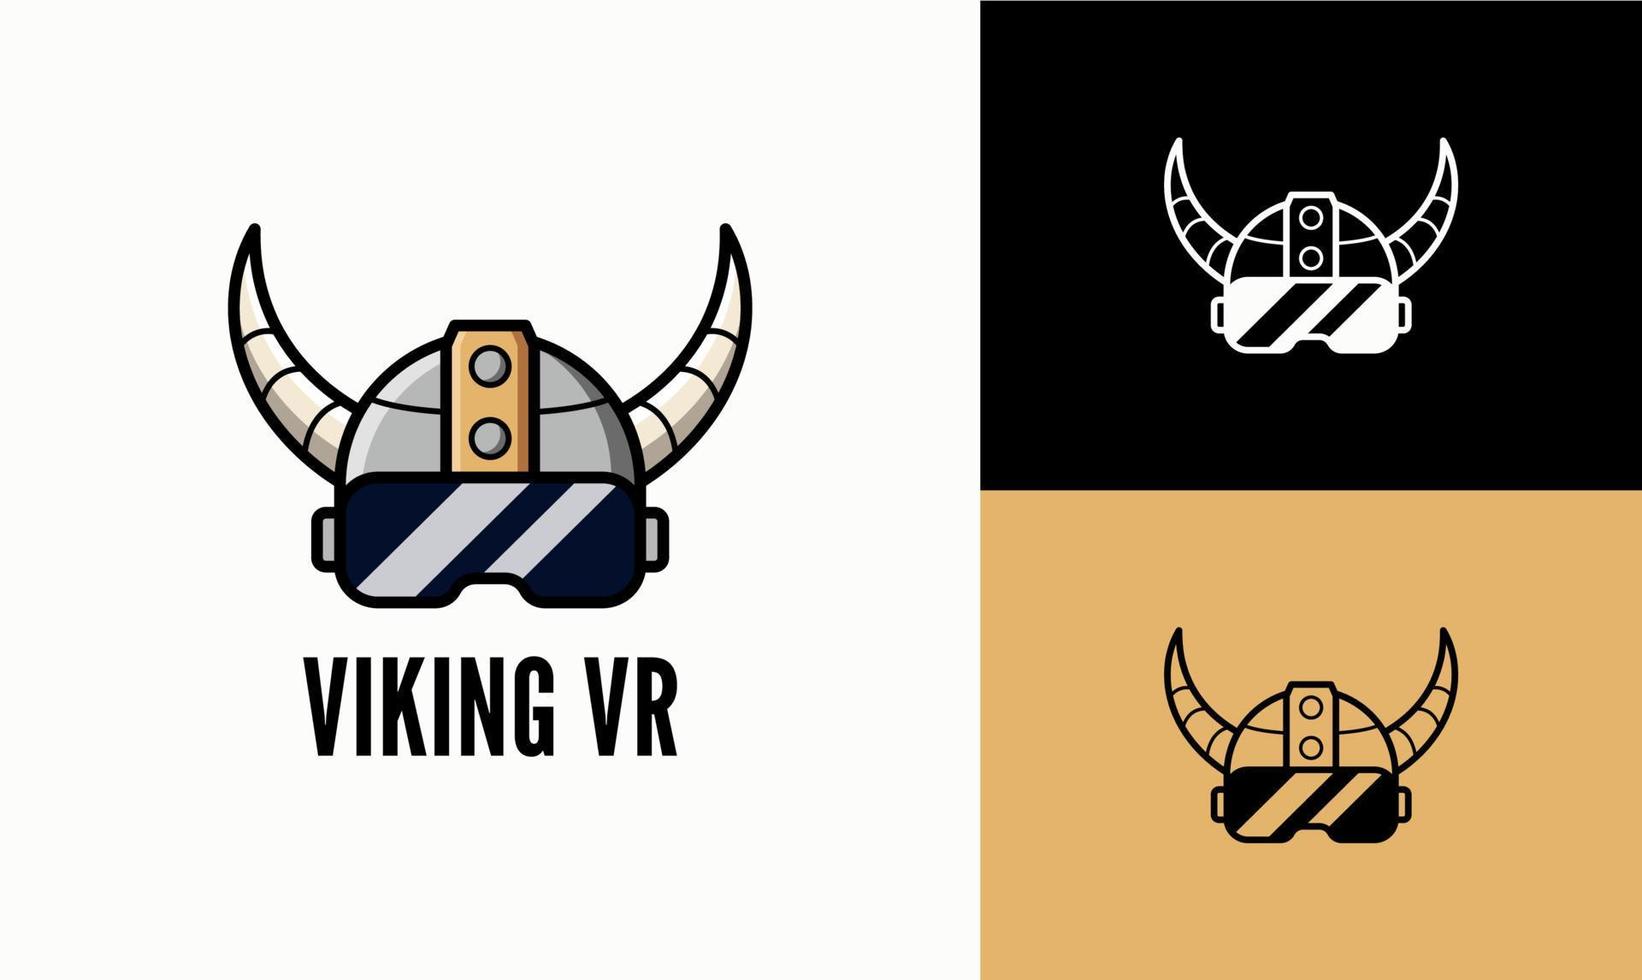 Il logo del casco vichingo e il vr sono adatti per i loghi dei giochi di eSport. casco antico e logo vvr moderno. vettore elmo vichingo.